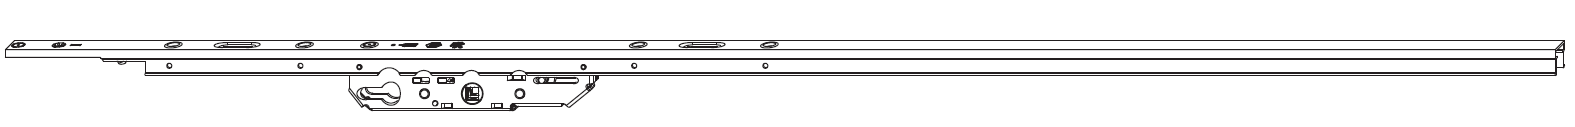 MAICO -  Cremonese RAIL-SYSTEMS per alzante scorrevole altezza maniglia fissa con chiusura a perni - gr / dim. 2 - L.1700 - entrata 37,5 - alt. man. 400 - lbb/hbb 1260 - 1760